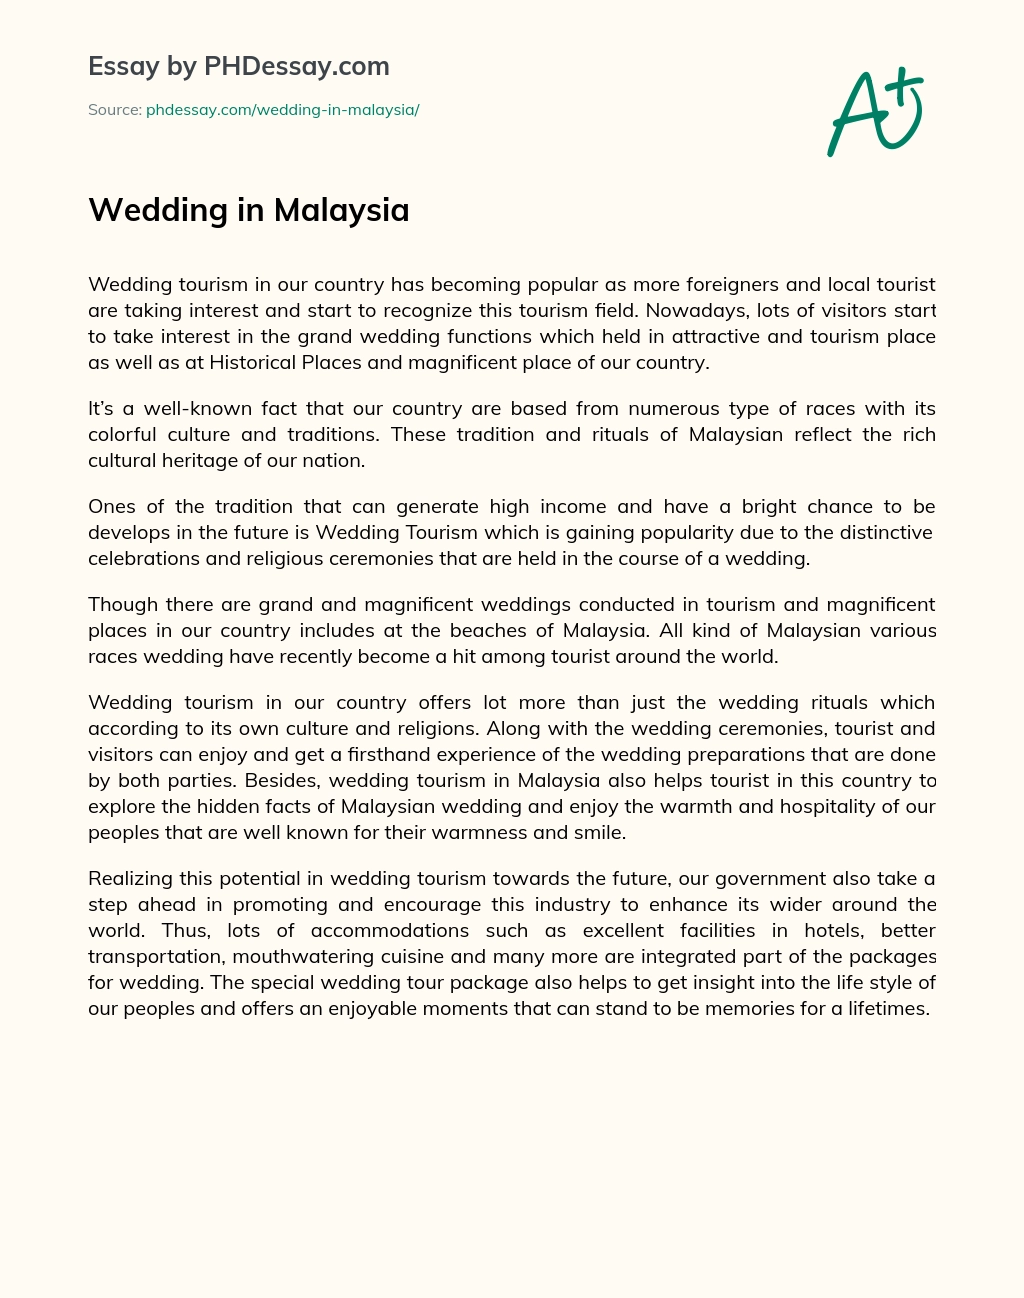 Wedding in Malaysia essay